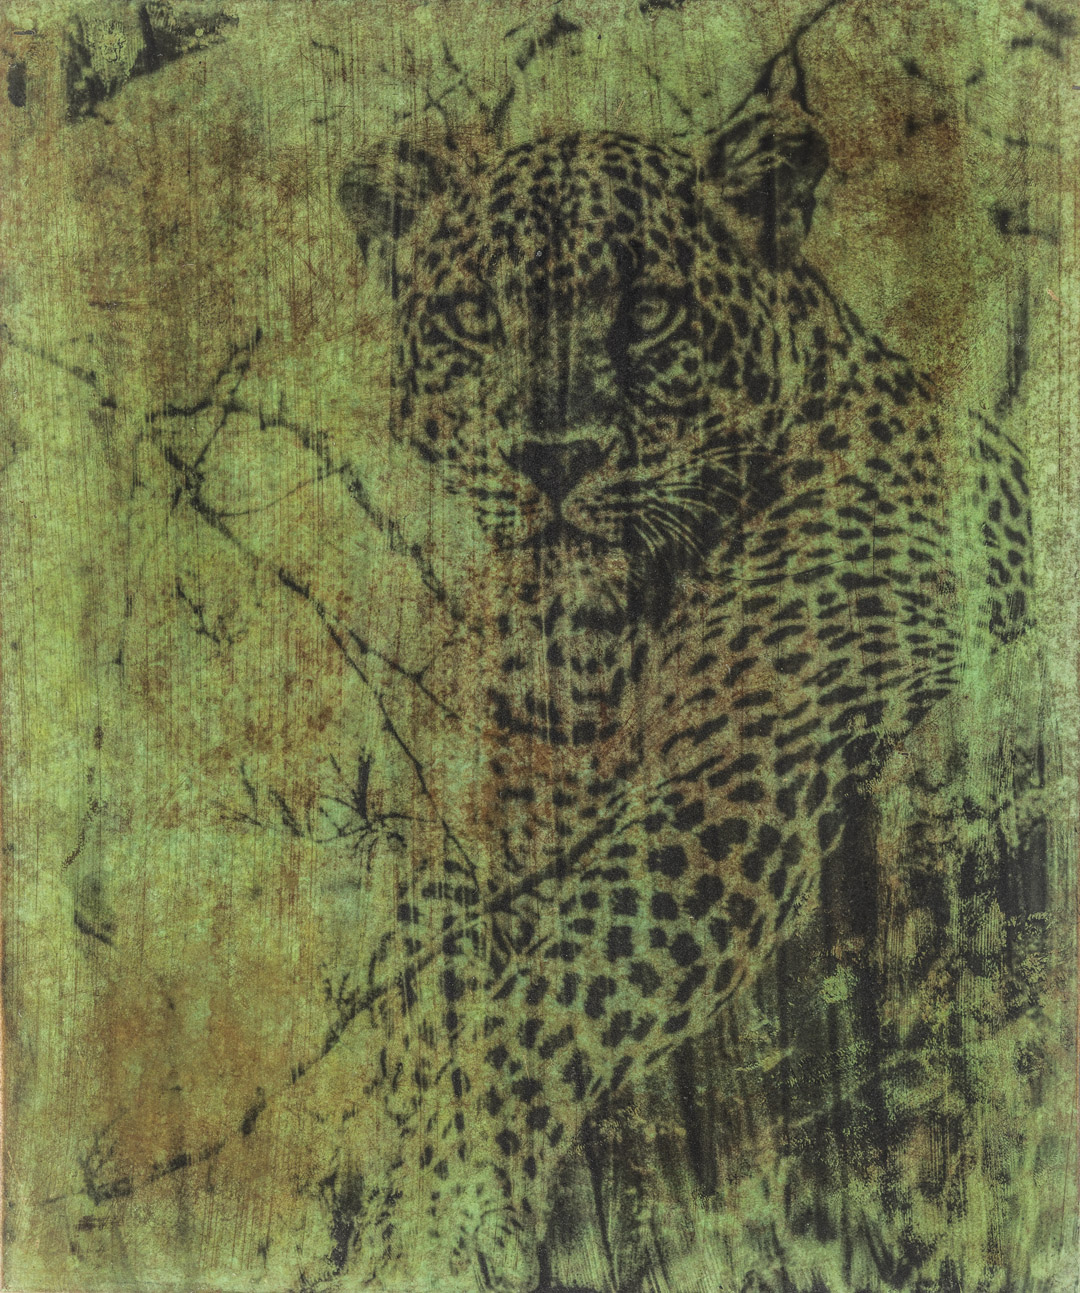 Ishasha Leopard Photine | Steve Russell Gallery